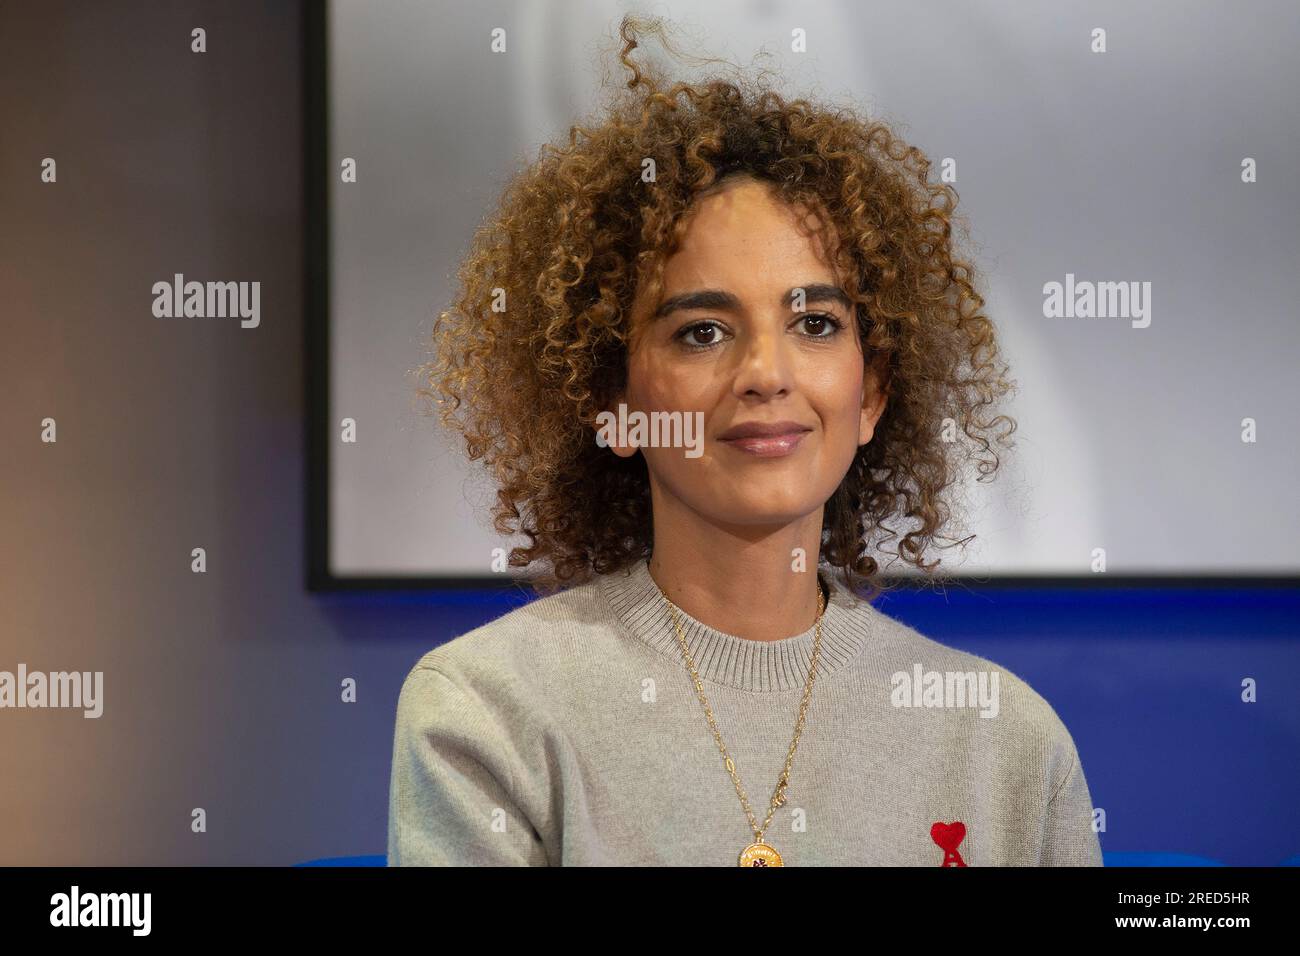 ' Frankfurt am main, DEU, 20.10.2022 : Portrait Leila Slimani, née le 3 octobre 1981 à Rabat, Maroc, est une écrivaine et journaliste franco-marocaine. Elle a reçu le Prix Goncourt en 2016 pour son roman ''chanson douce''' Banque D'Images